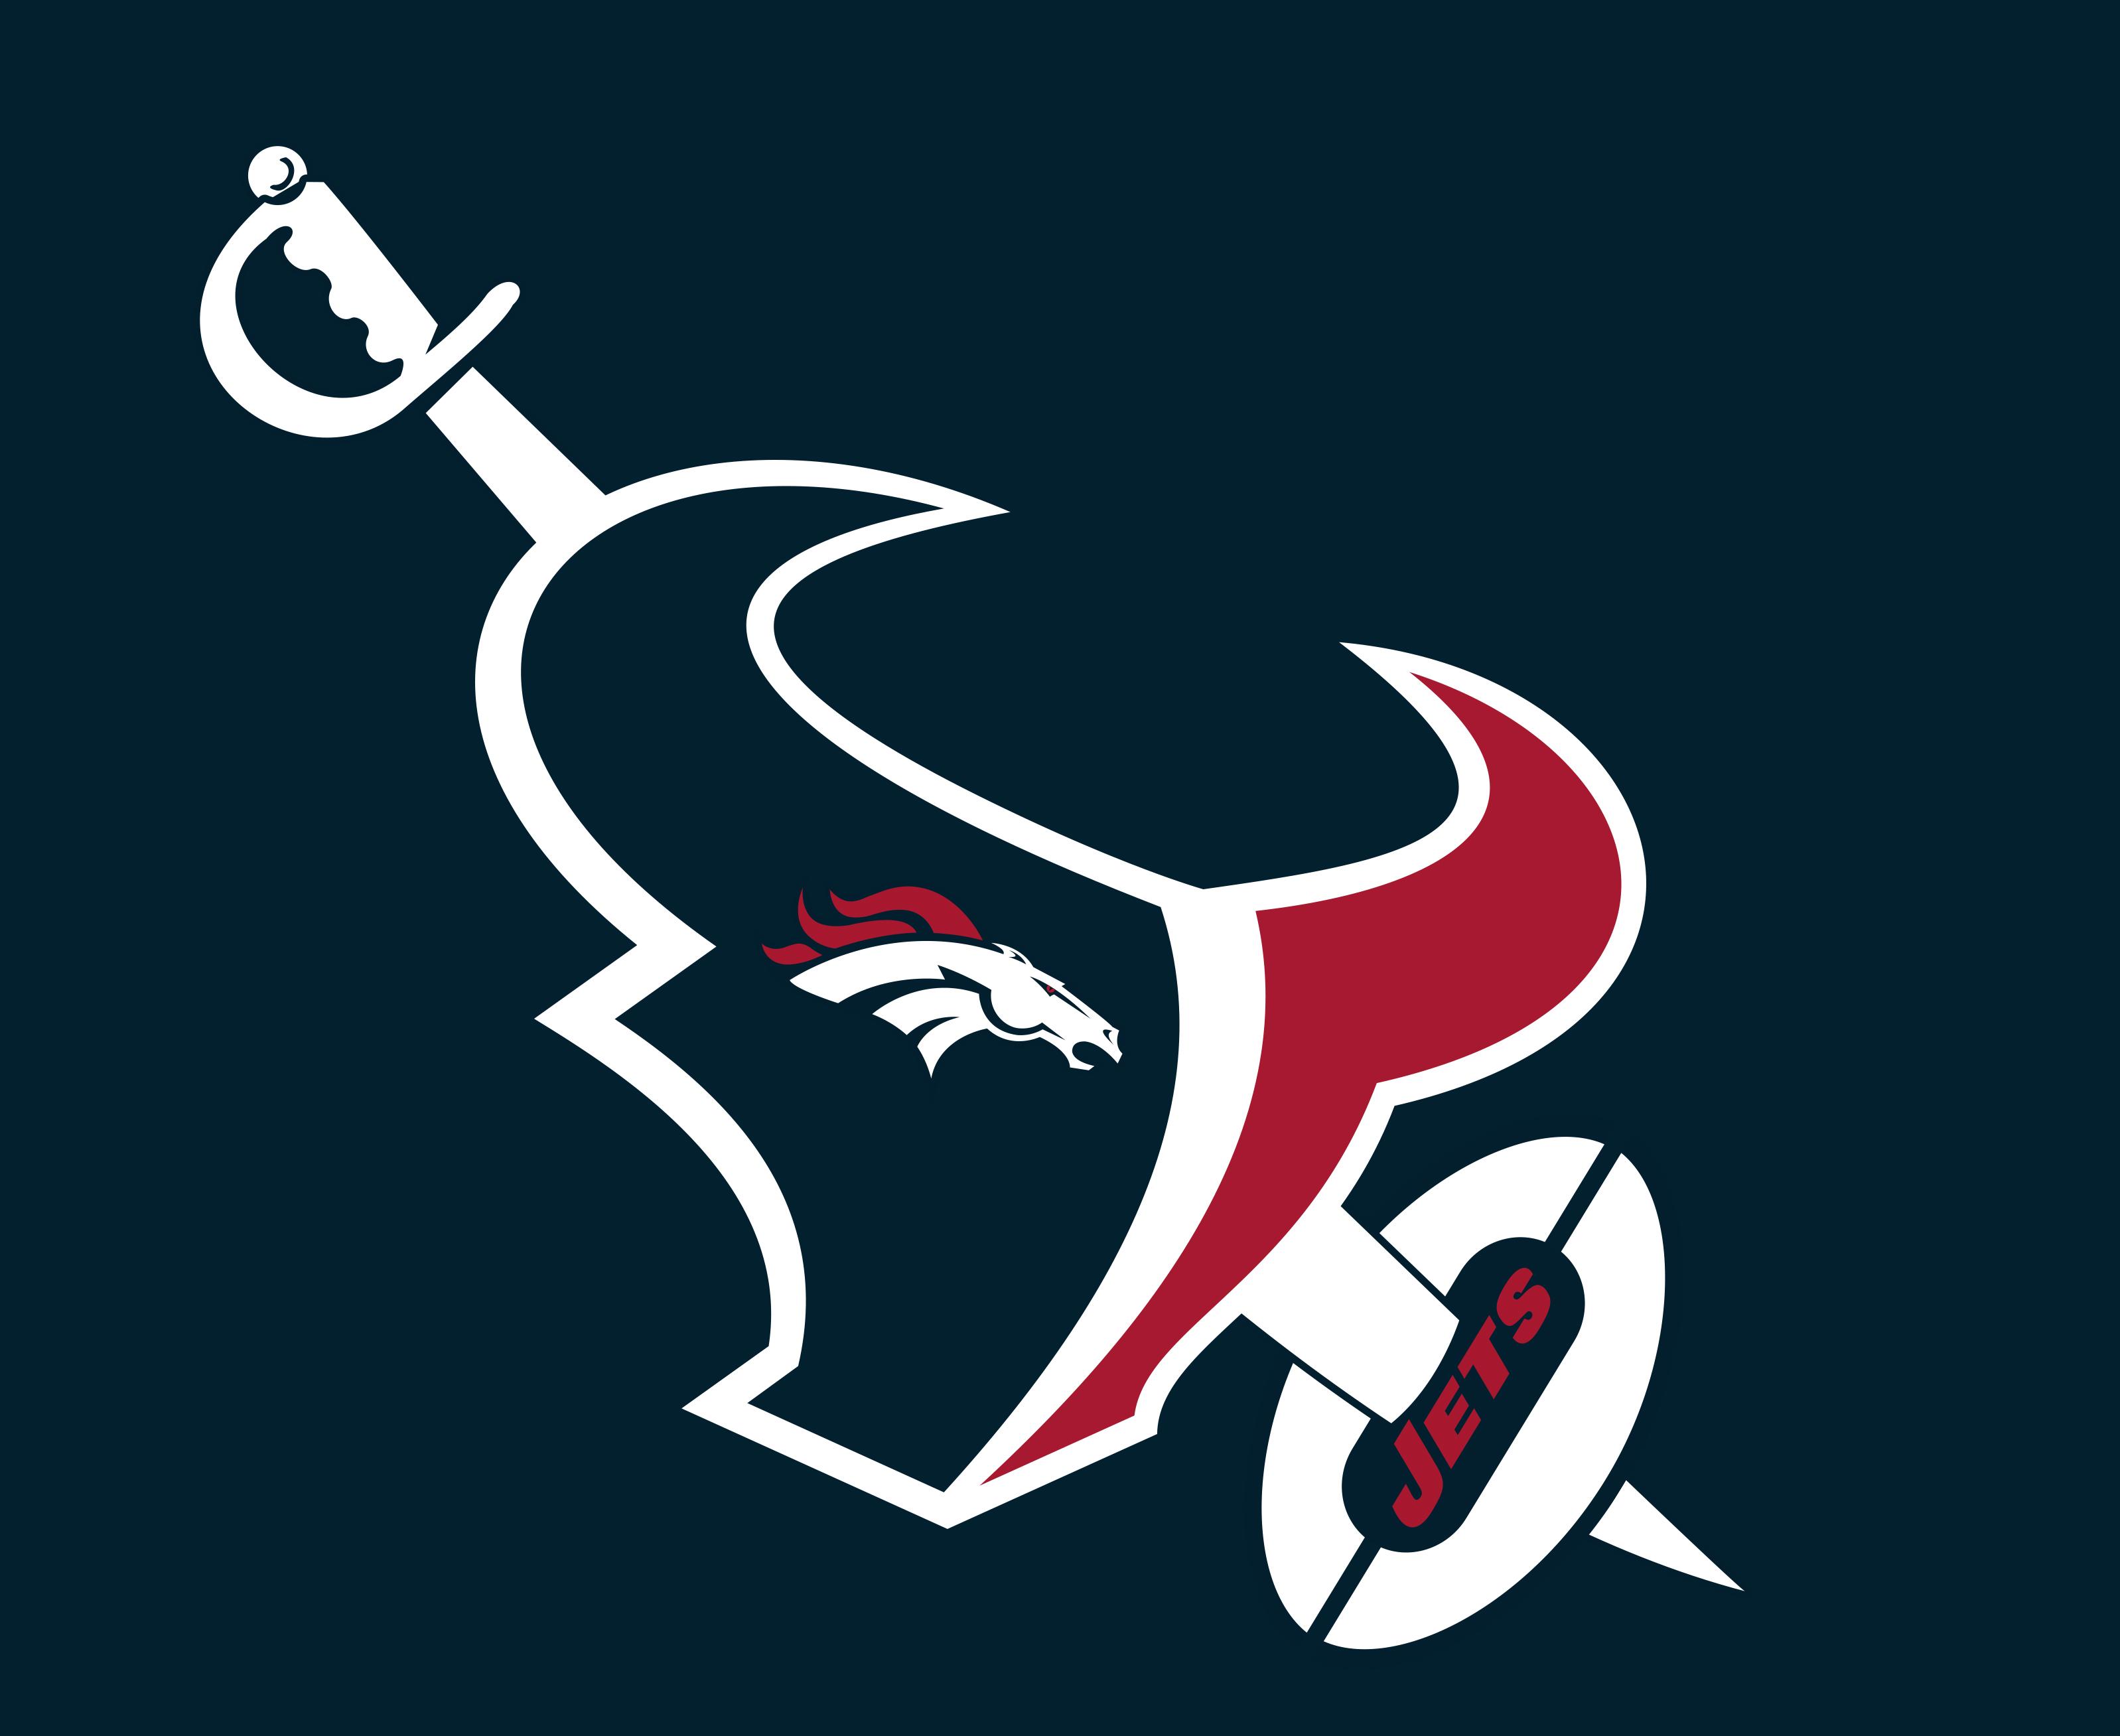 Houston Texans New Logo - Houston Texans unveil new logo for the last game of the season OC